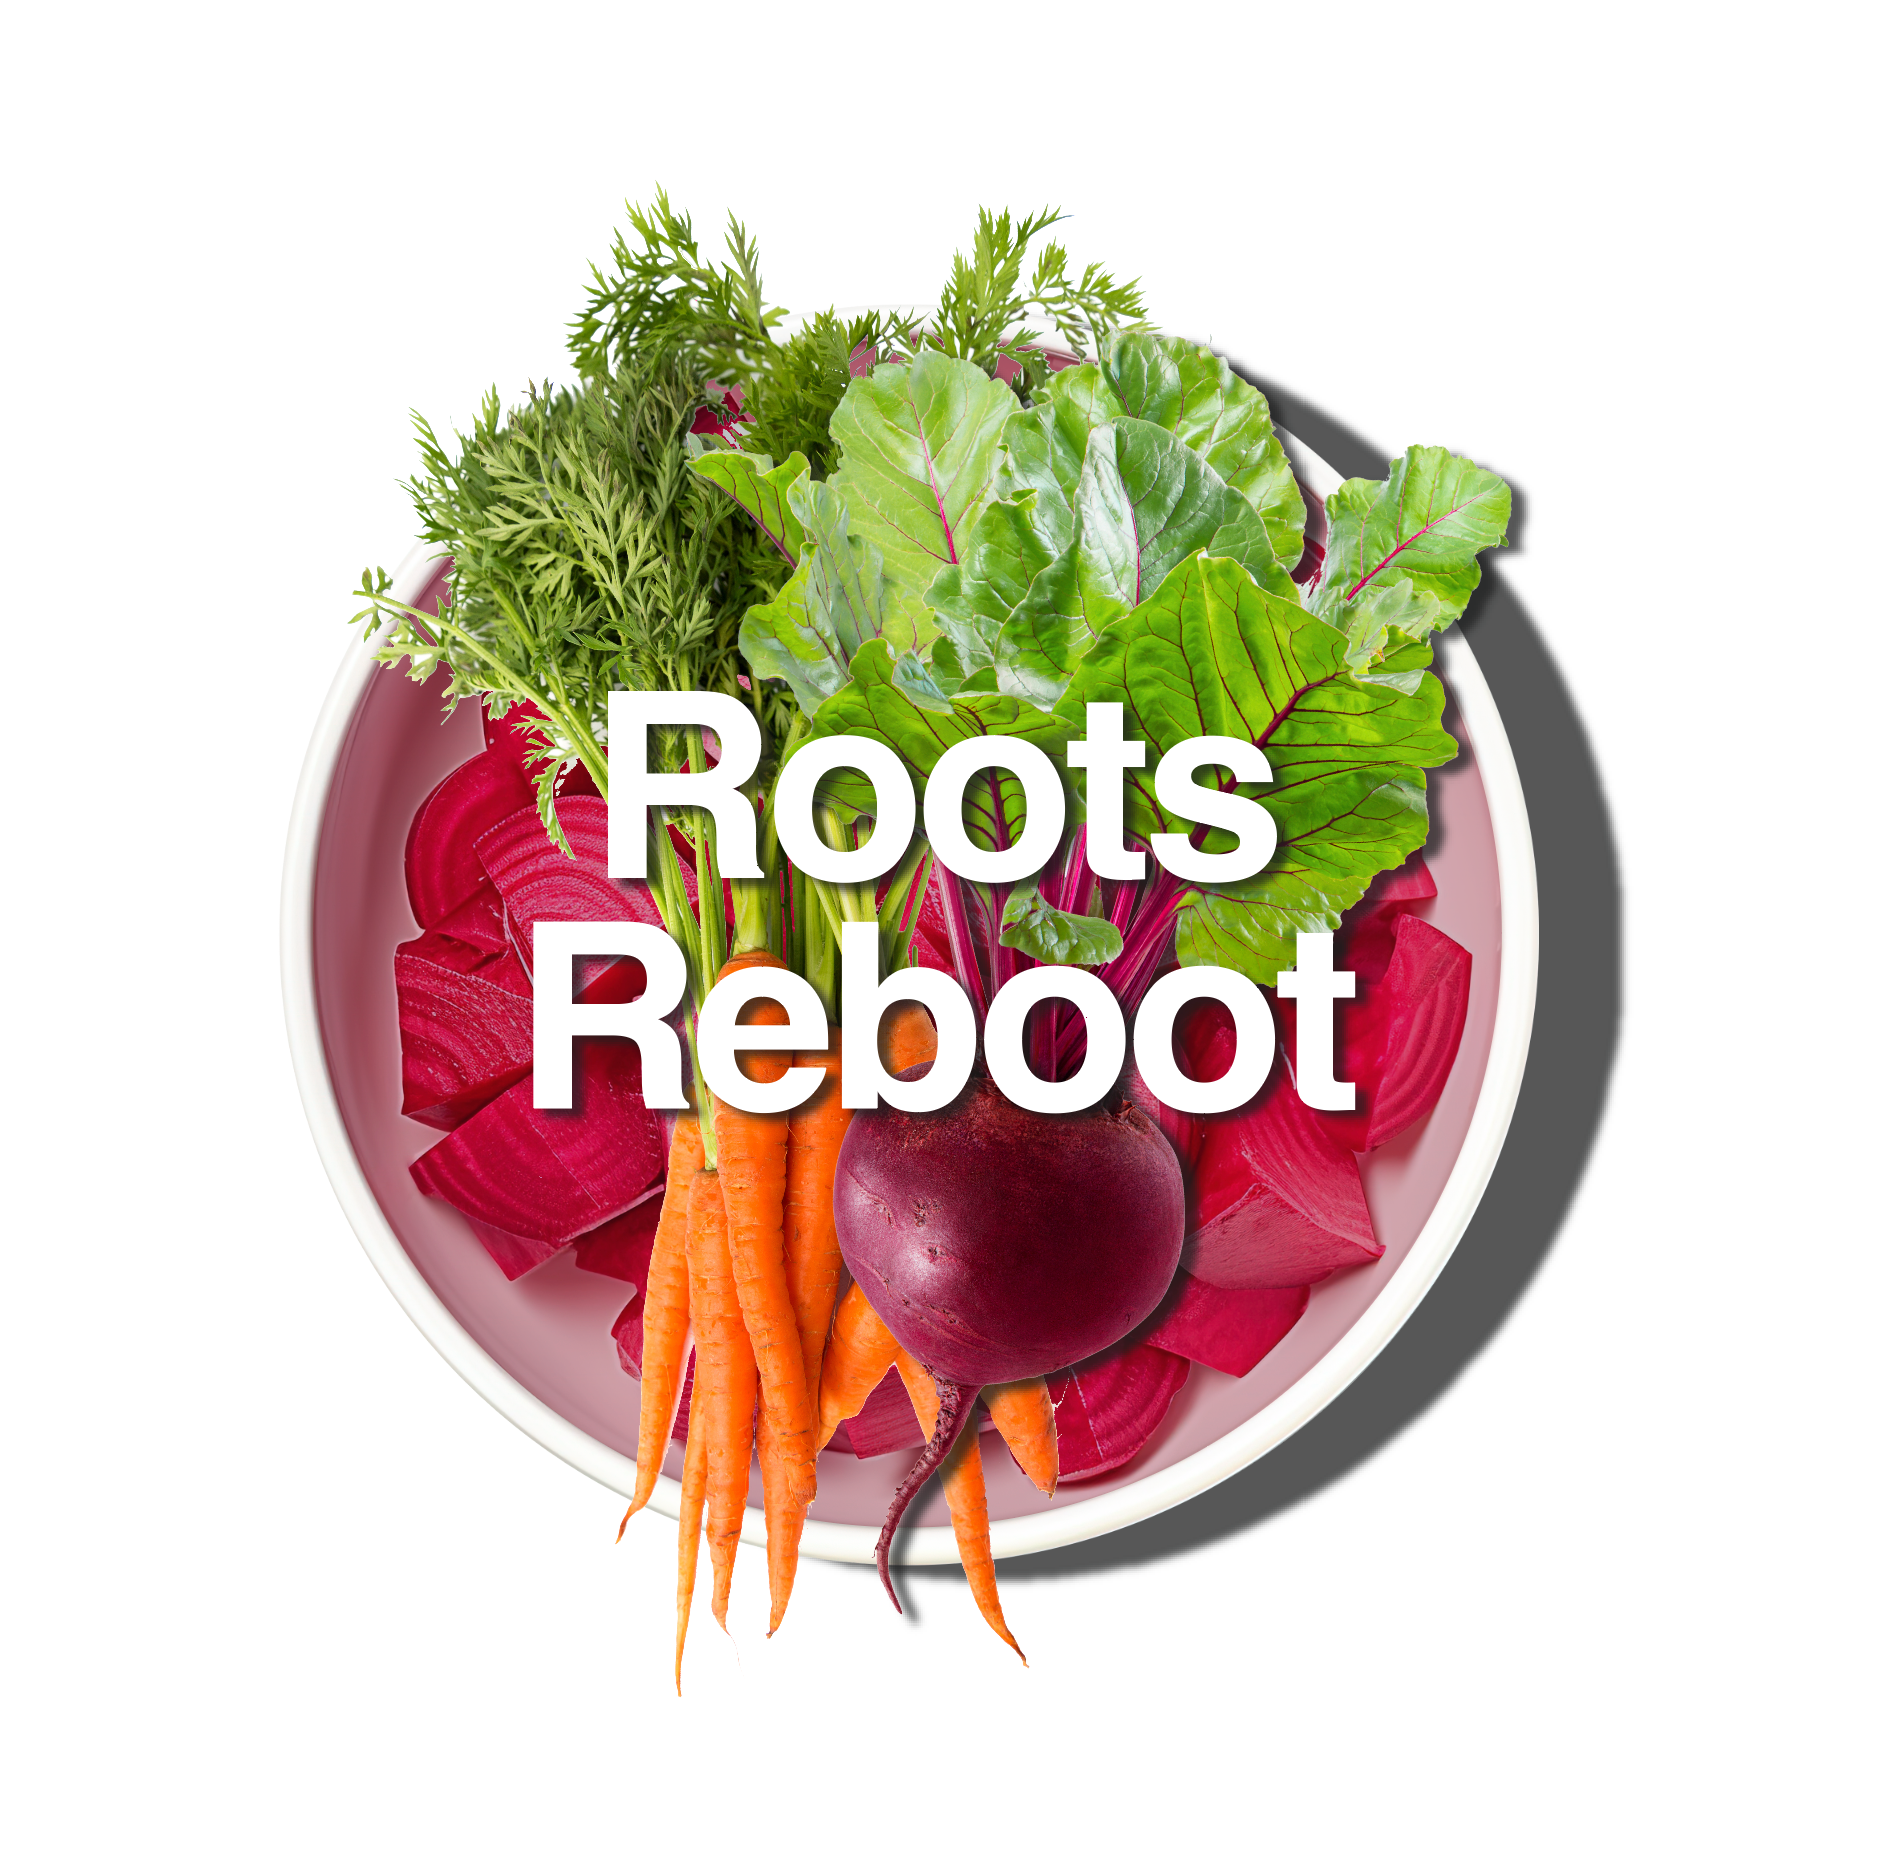 Roots Reboot